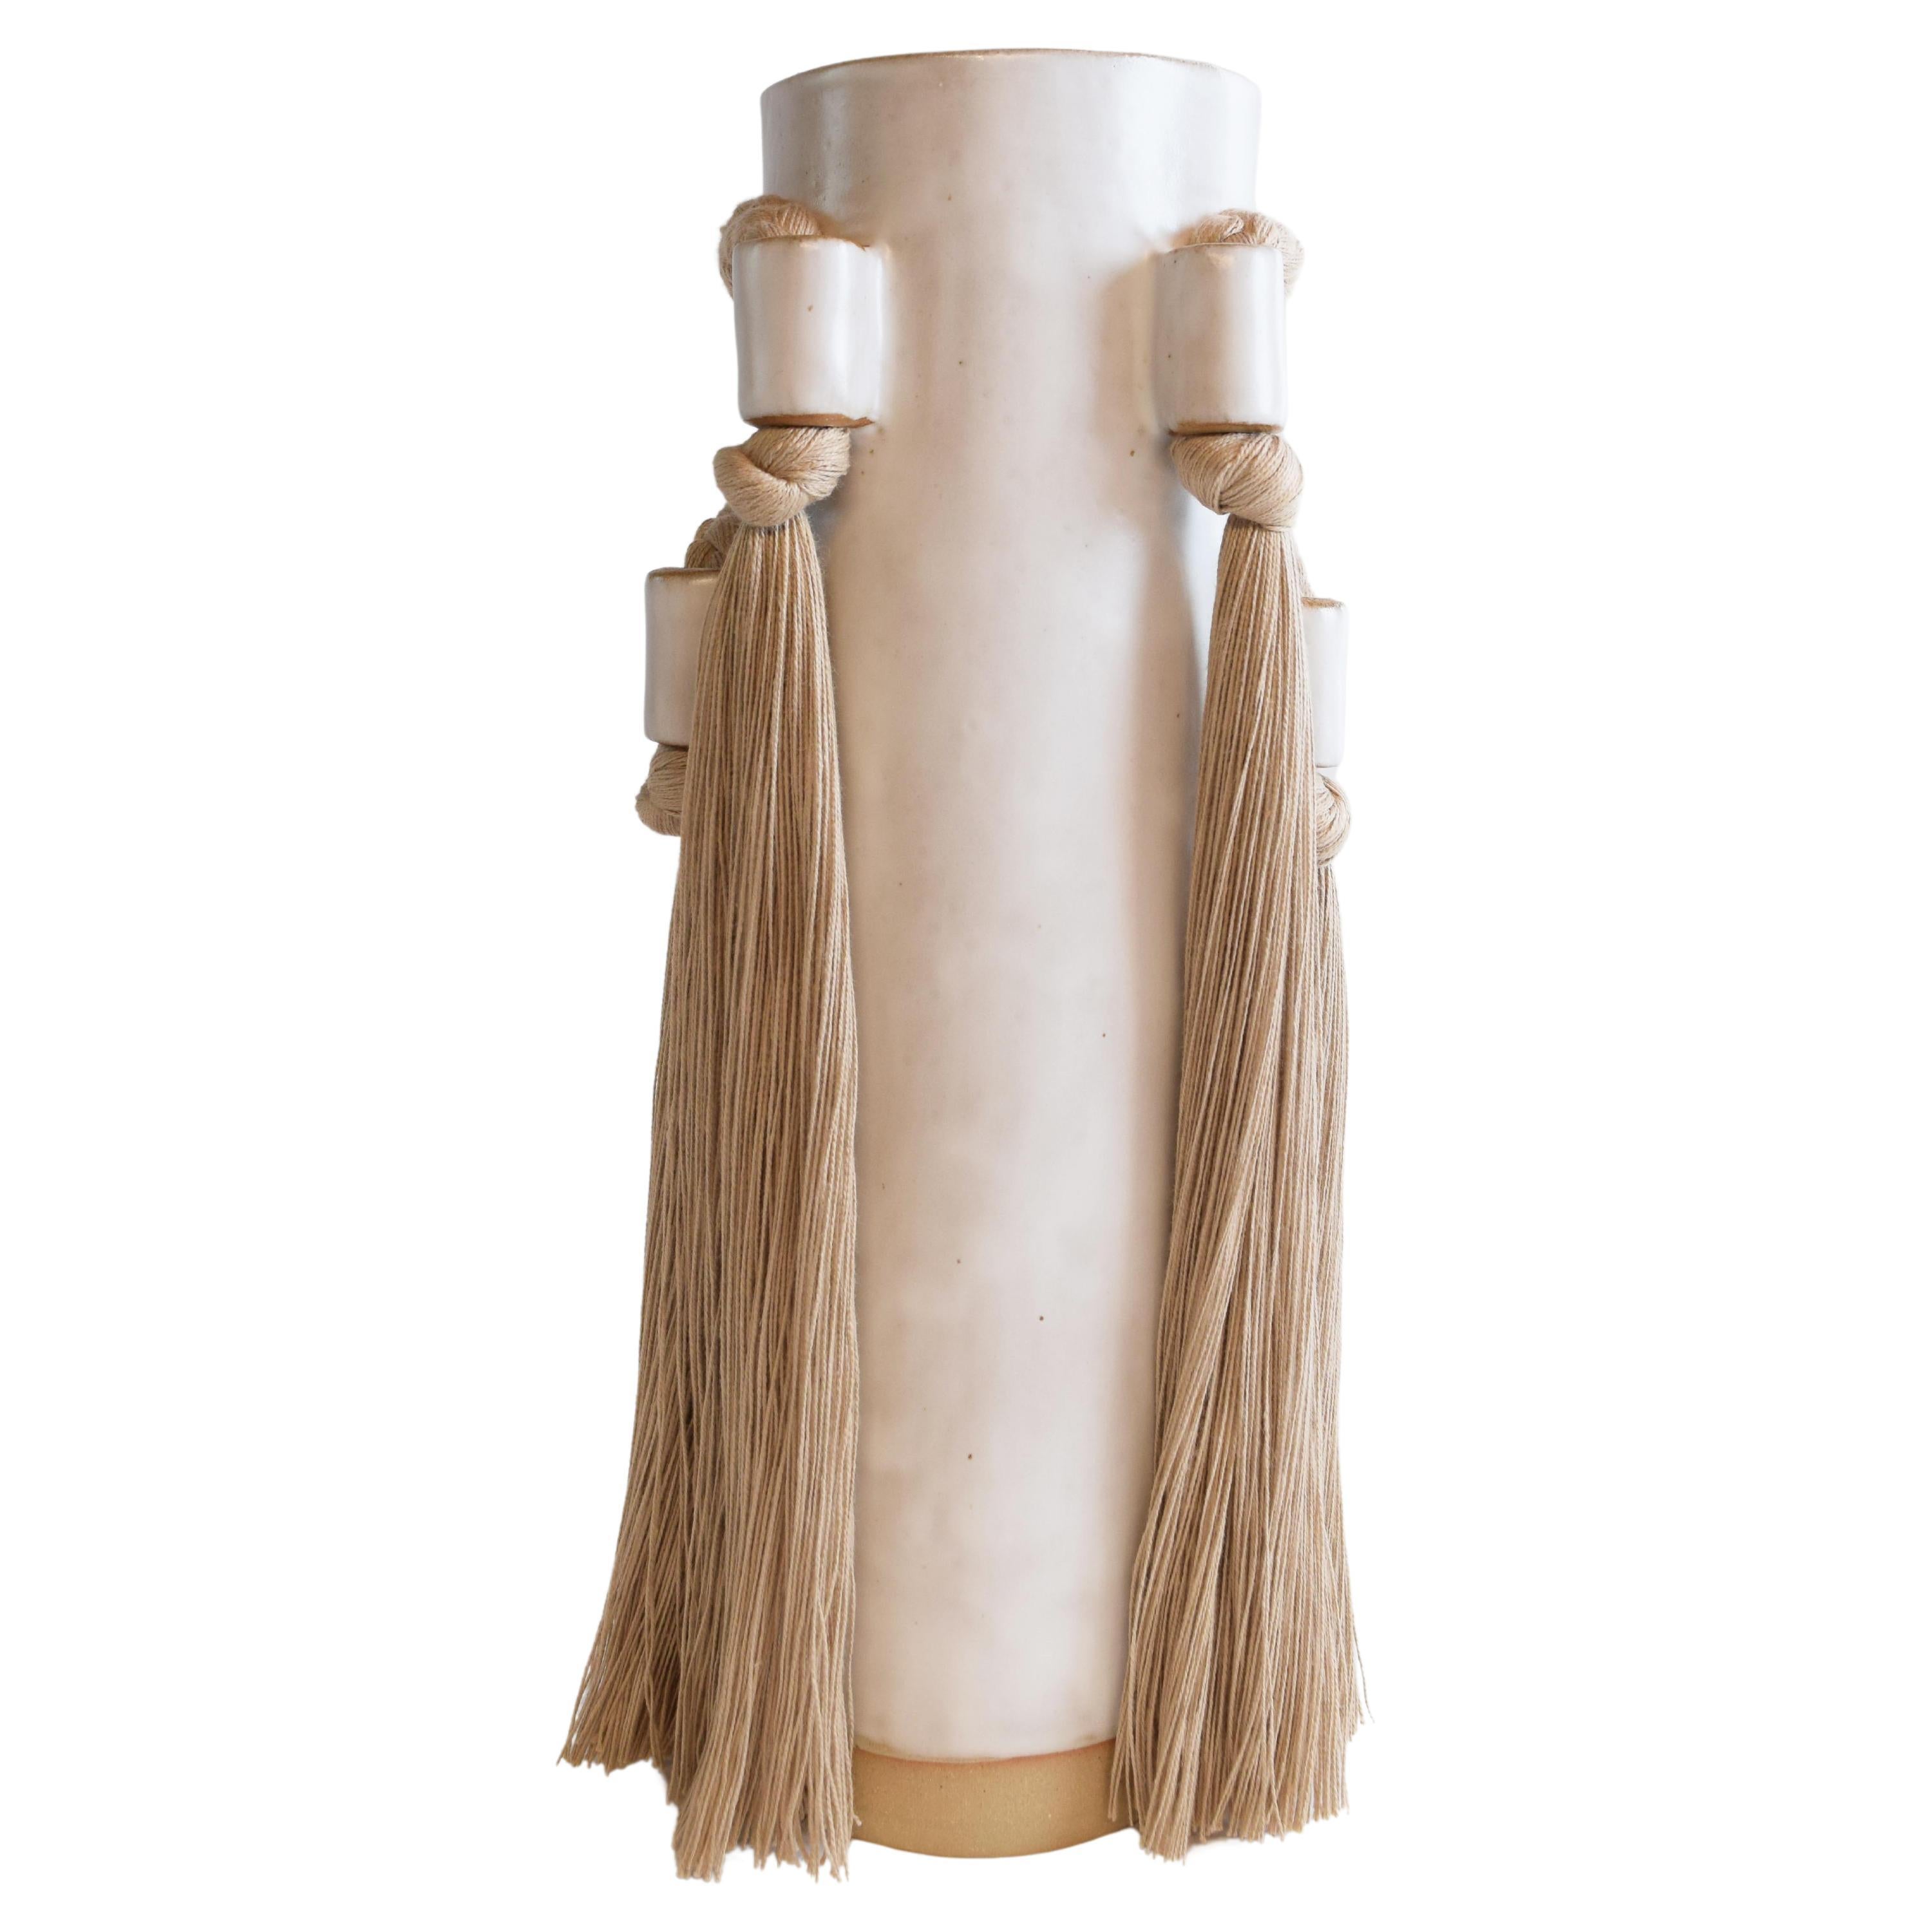 Vase en céramique fait à la main n°735 blanc avec détails tressés et franges en coton brun clair